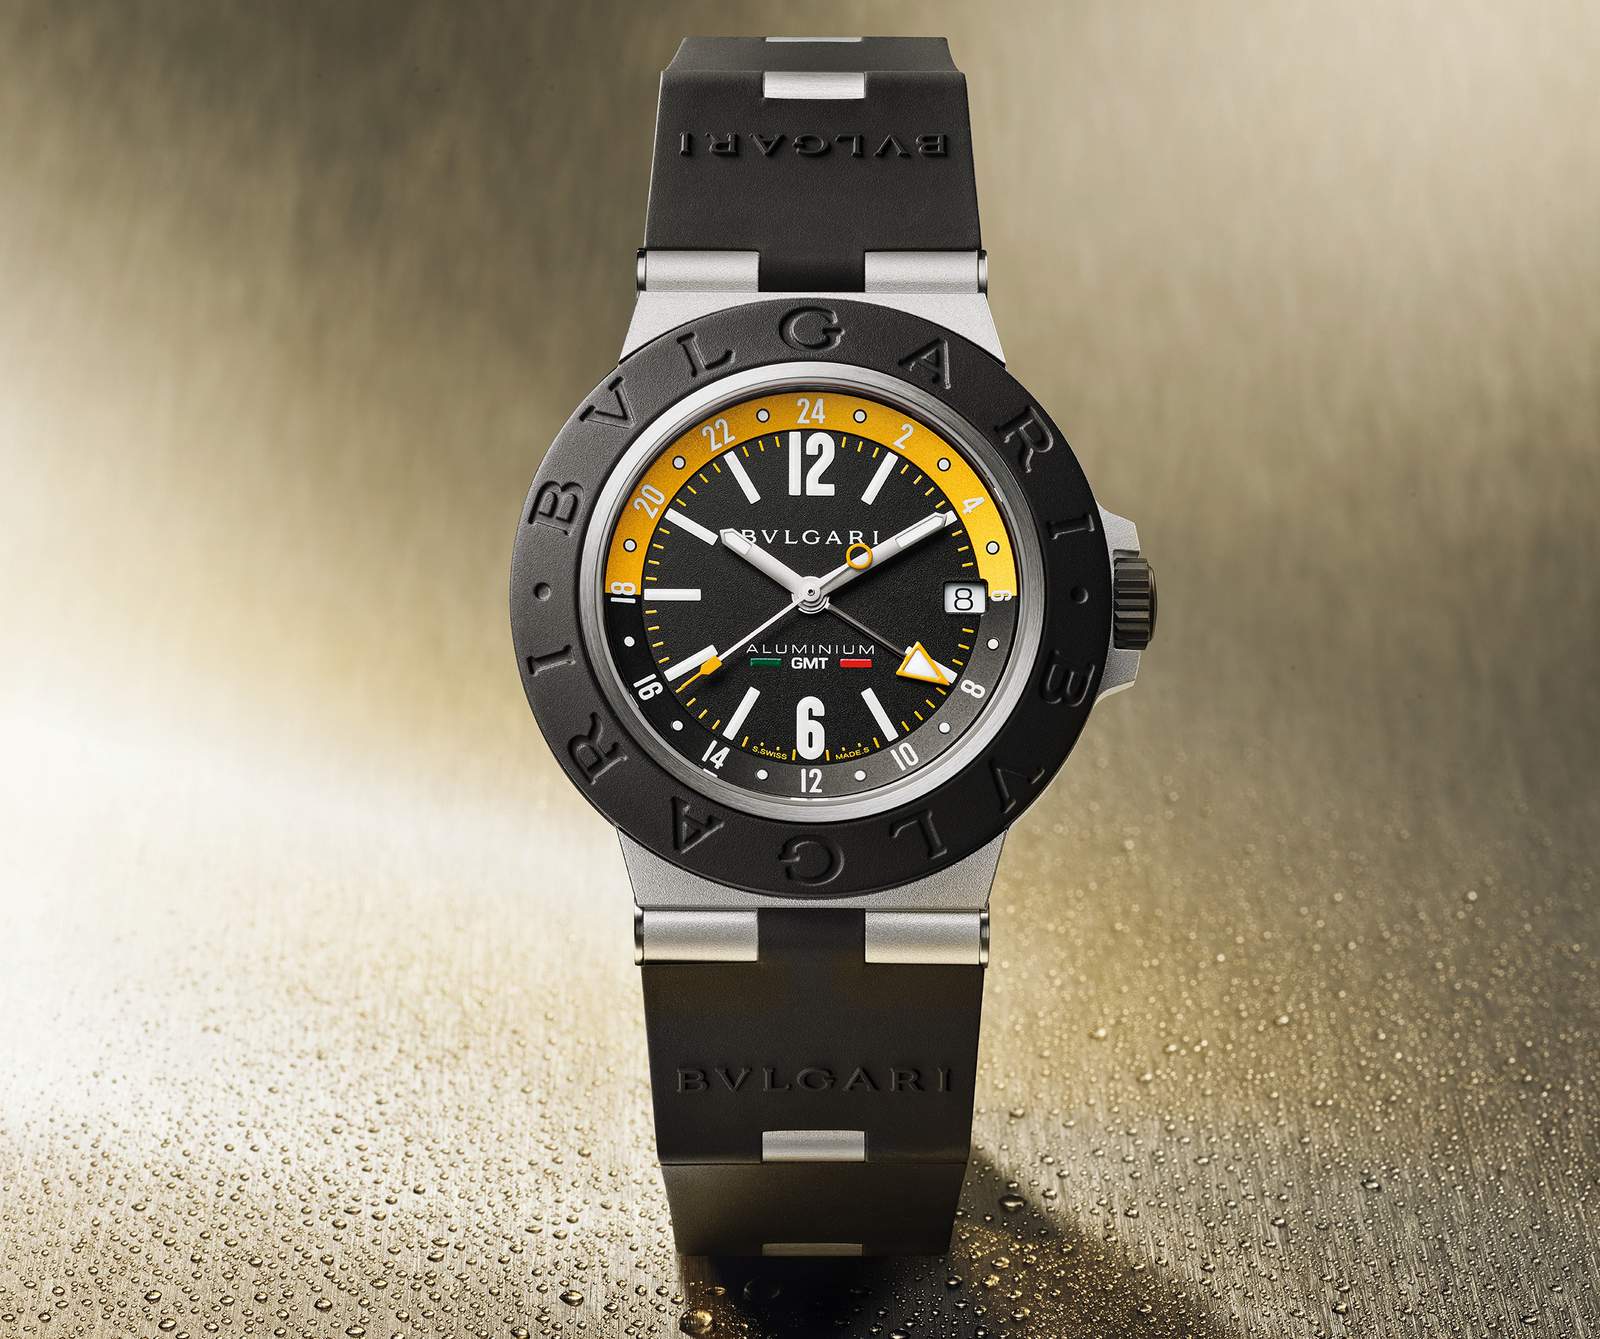 Bulgari has announced the ‘Amerigo Vespucci’ Special Edition watch